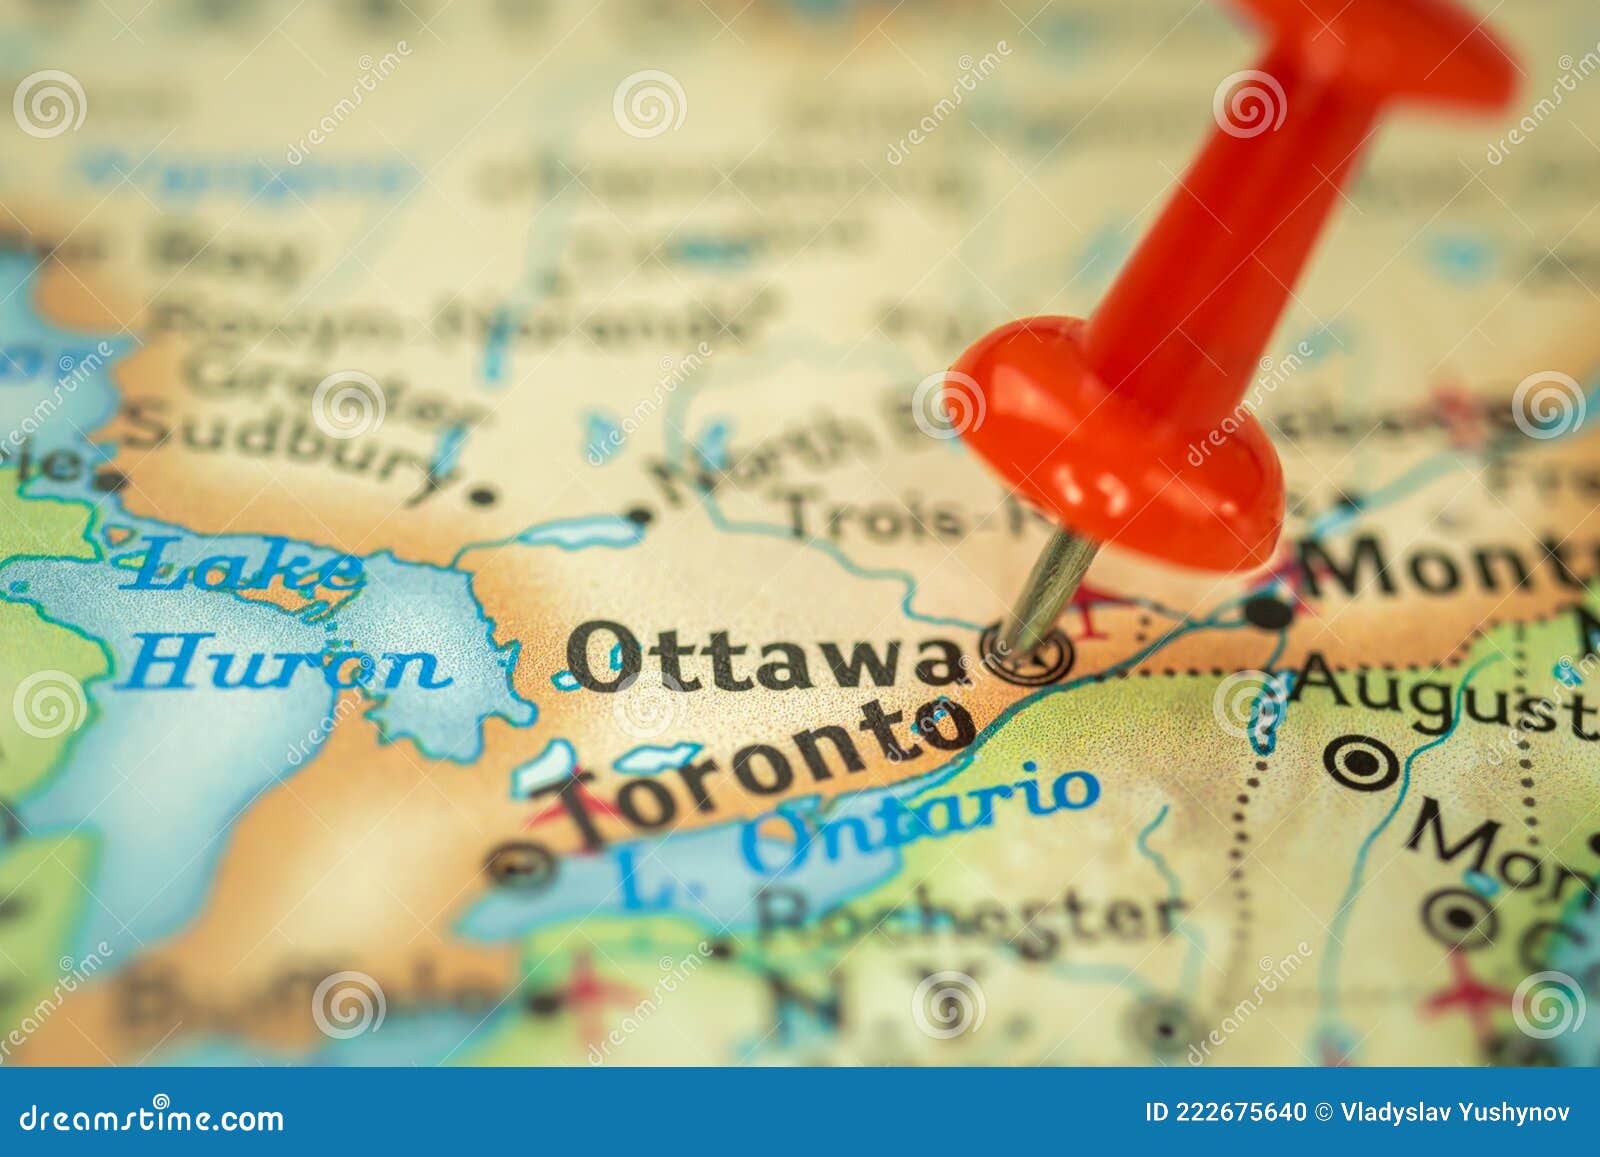 渥太华，在地图的安大略 库存图片. 图片 包括有 法律, 政府, 世界, 目的地, 加拿大, 国会大厦, 国家 - 87763195